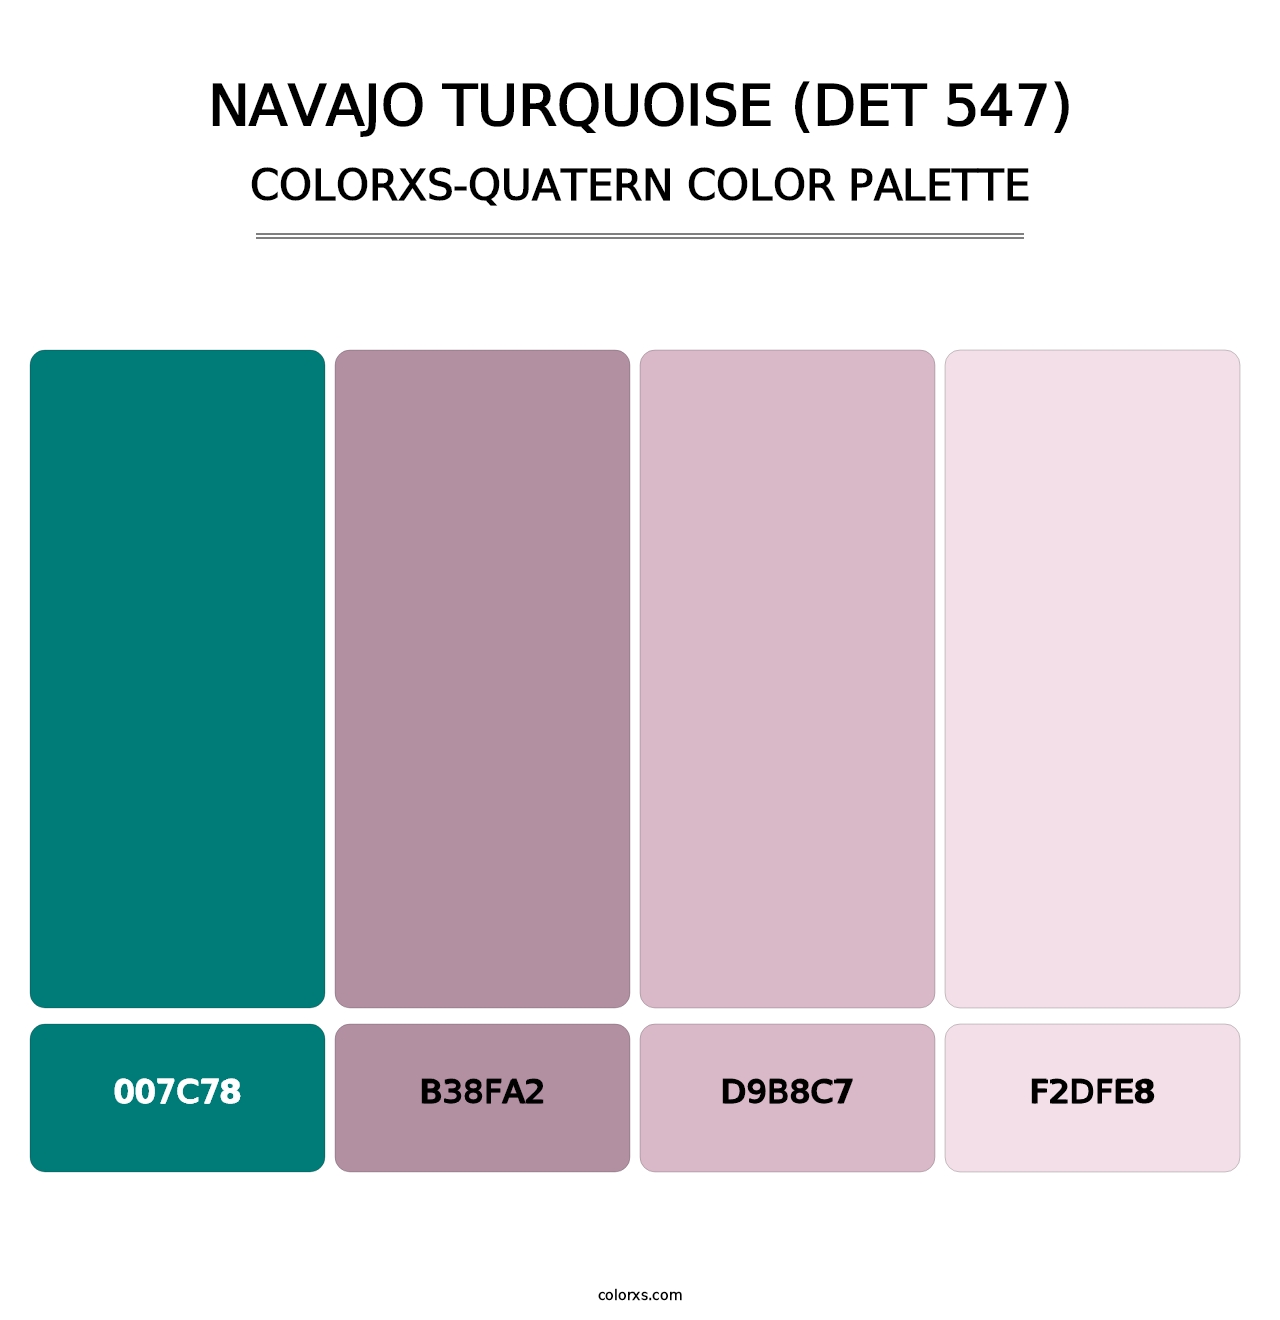 Navajo Turquoise (DET 547) - Colorxs Quatern Palette